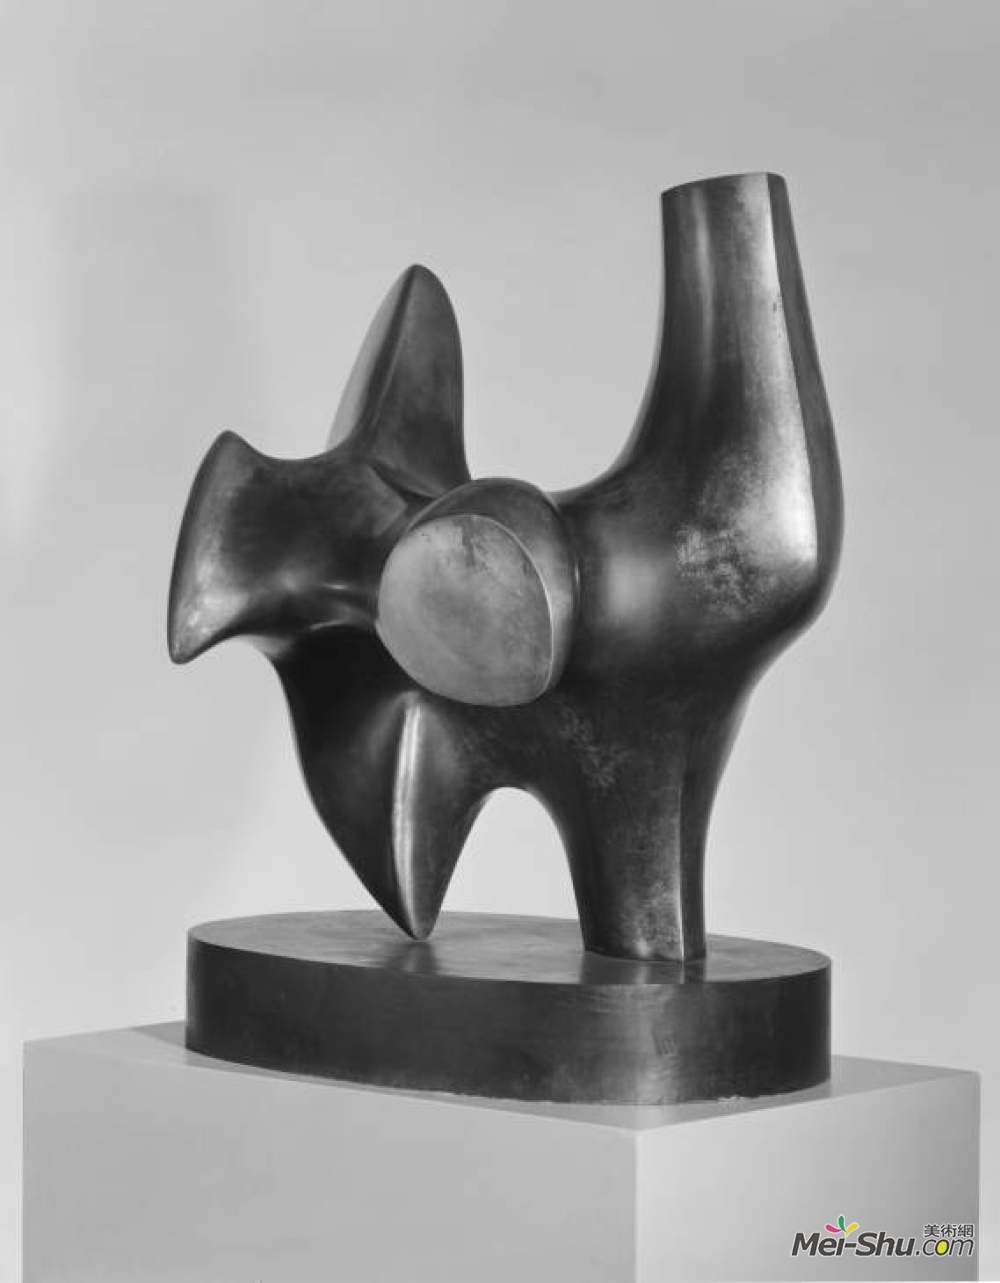 弓箭手 艺术家:亨利·摩尔 年代:1964 风格:抽象主义 类型:雕塑